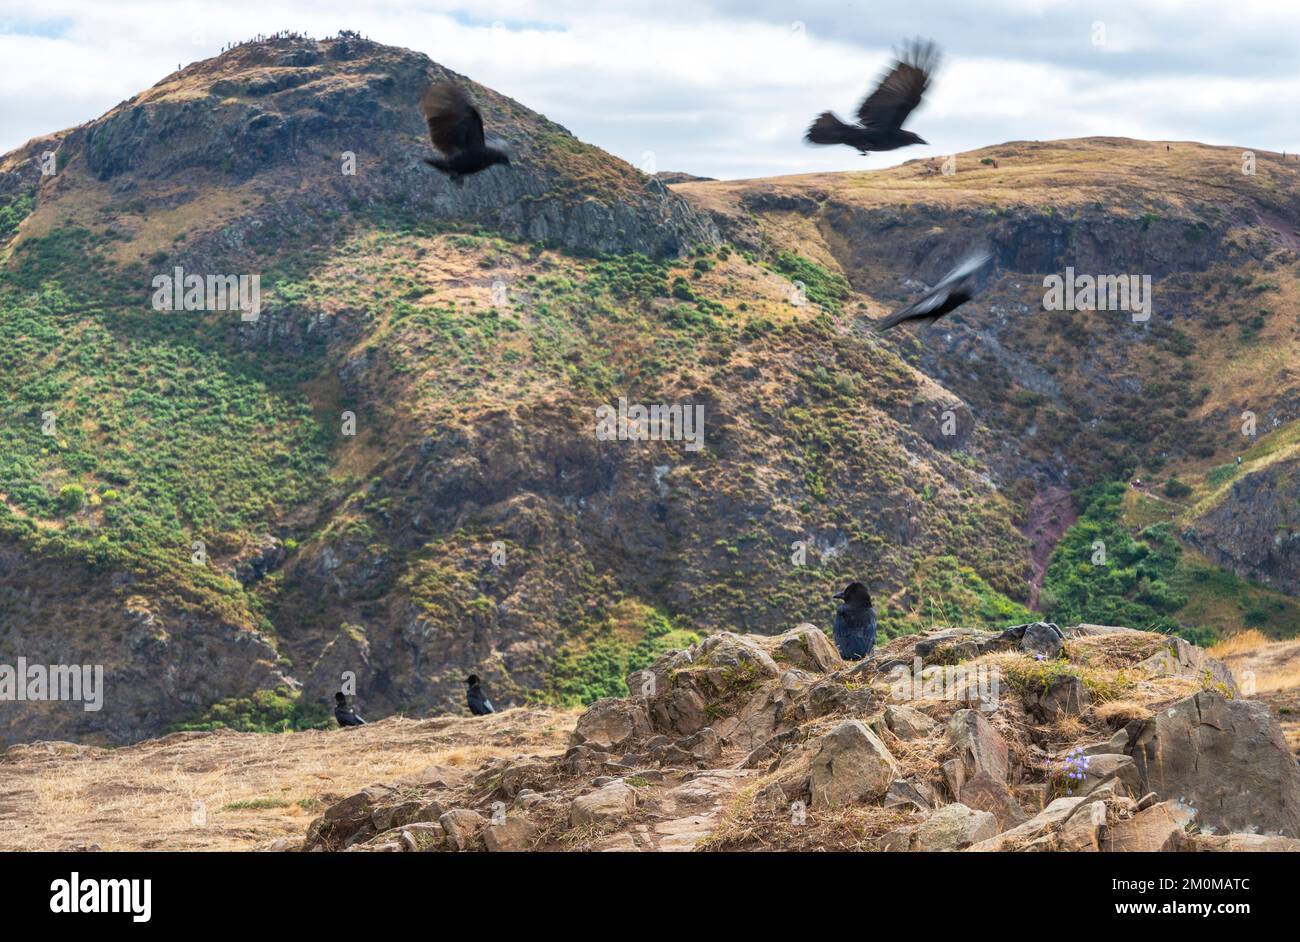 Uccelli carrieri neri, che la collina prende il nome, circling e arroccato sulla montagna rocciosa, che si affaccia sullo skyline della città di Edimburgo, Arthurs Seat cima Foto Stock